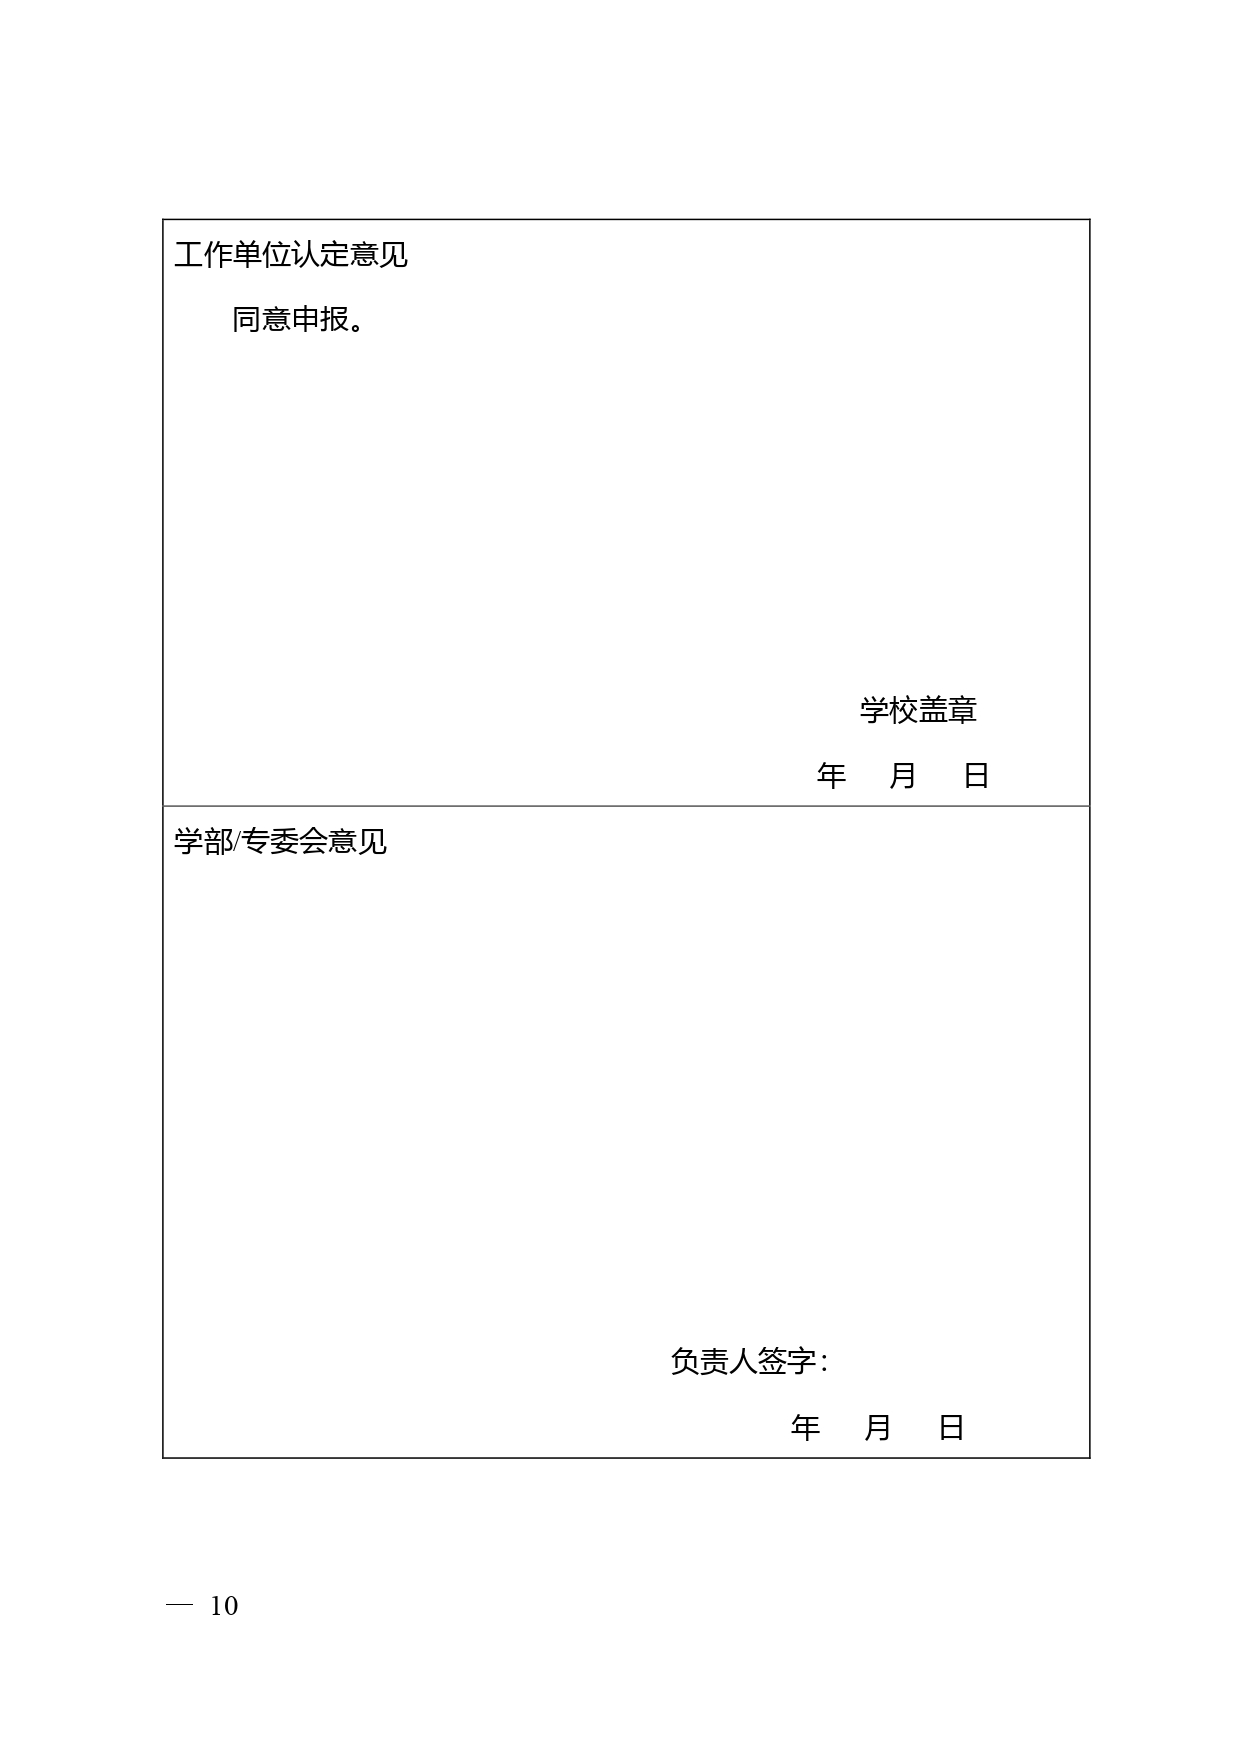 中国高等学校十大科技进展申报表 张可可终版3 page 0010